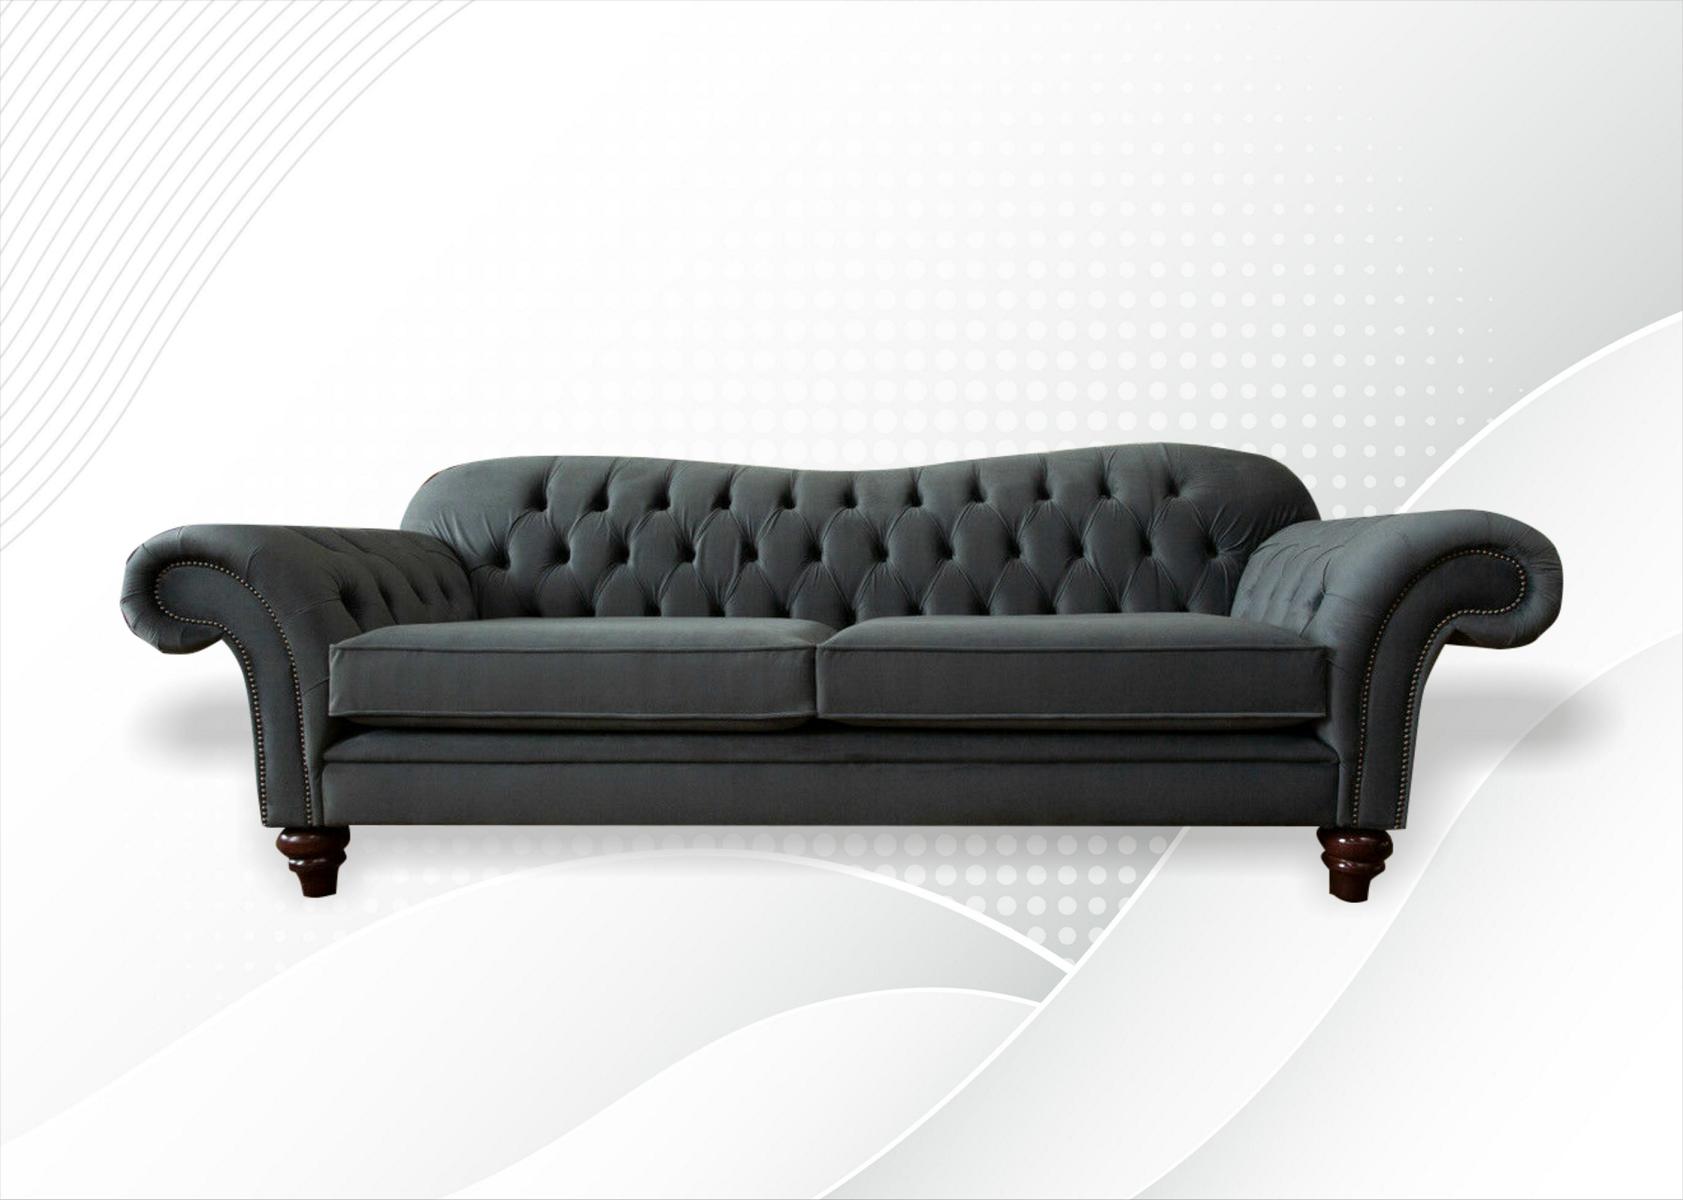 xxl Sofa 4 Sitzer Couch Chesterfield Polster Sitz Garnitur Leder Textil Grau